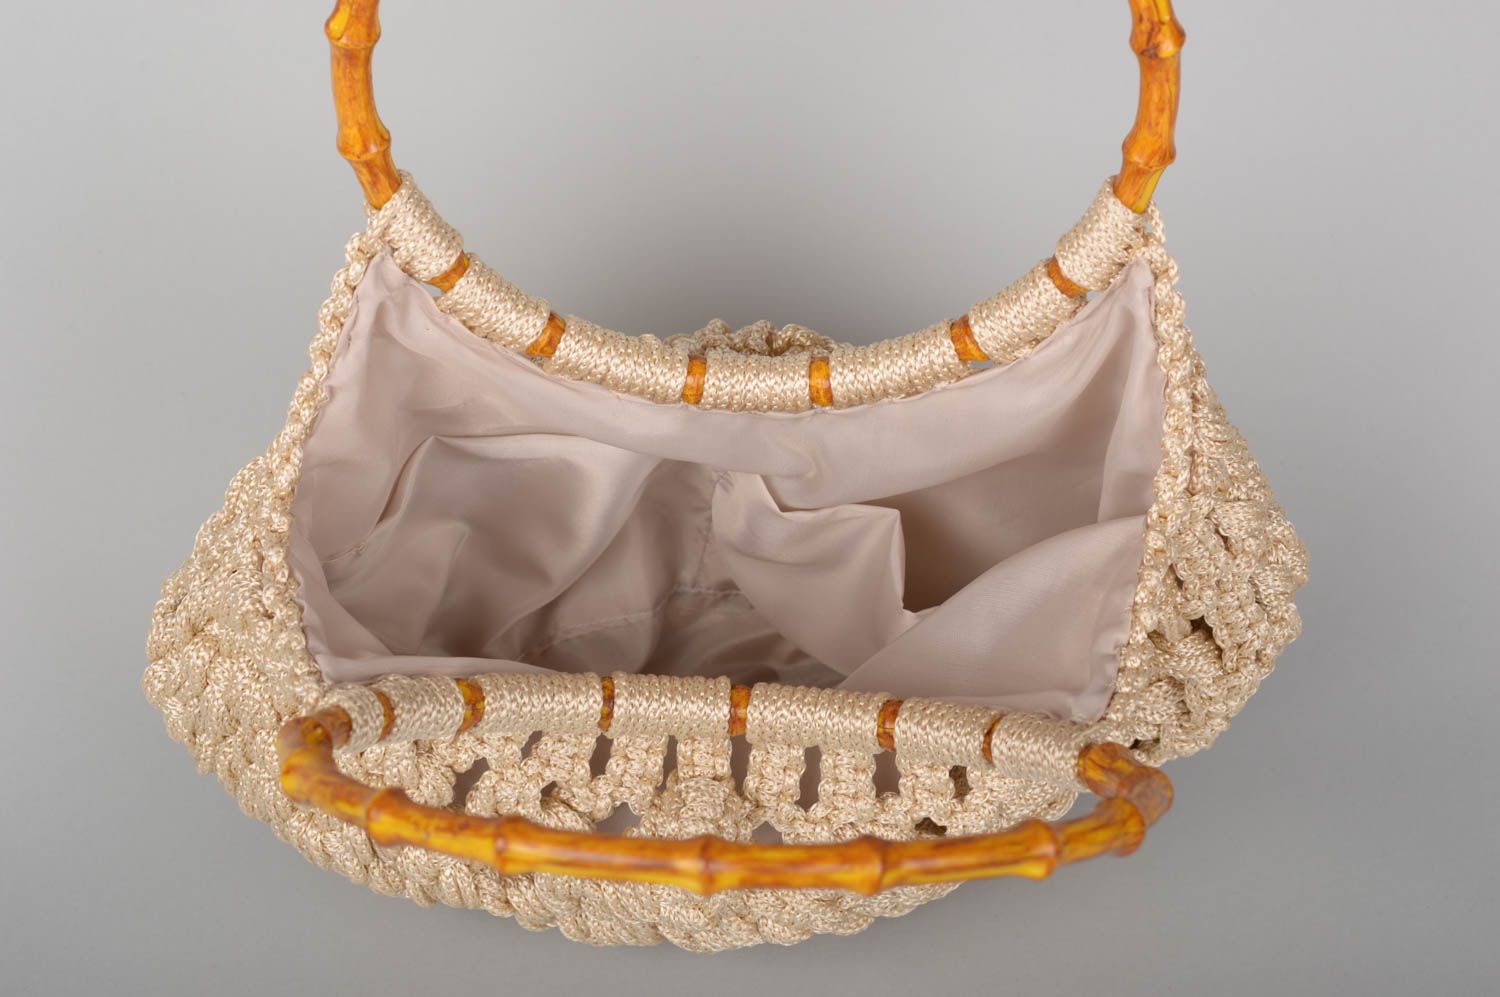 Unusual handmade woven macrame bag shoulder bag handbag design gifts for her photo 3